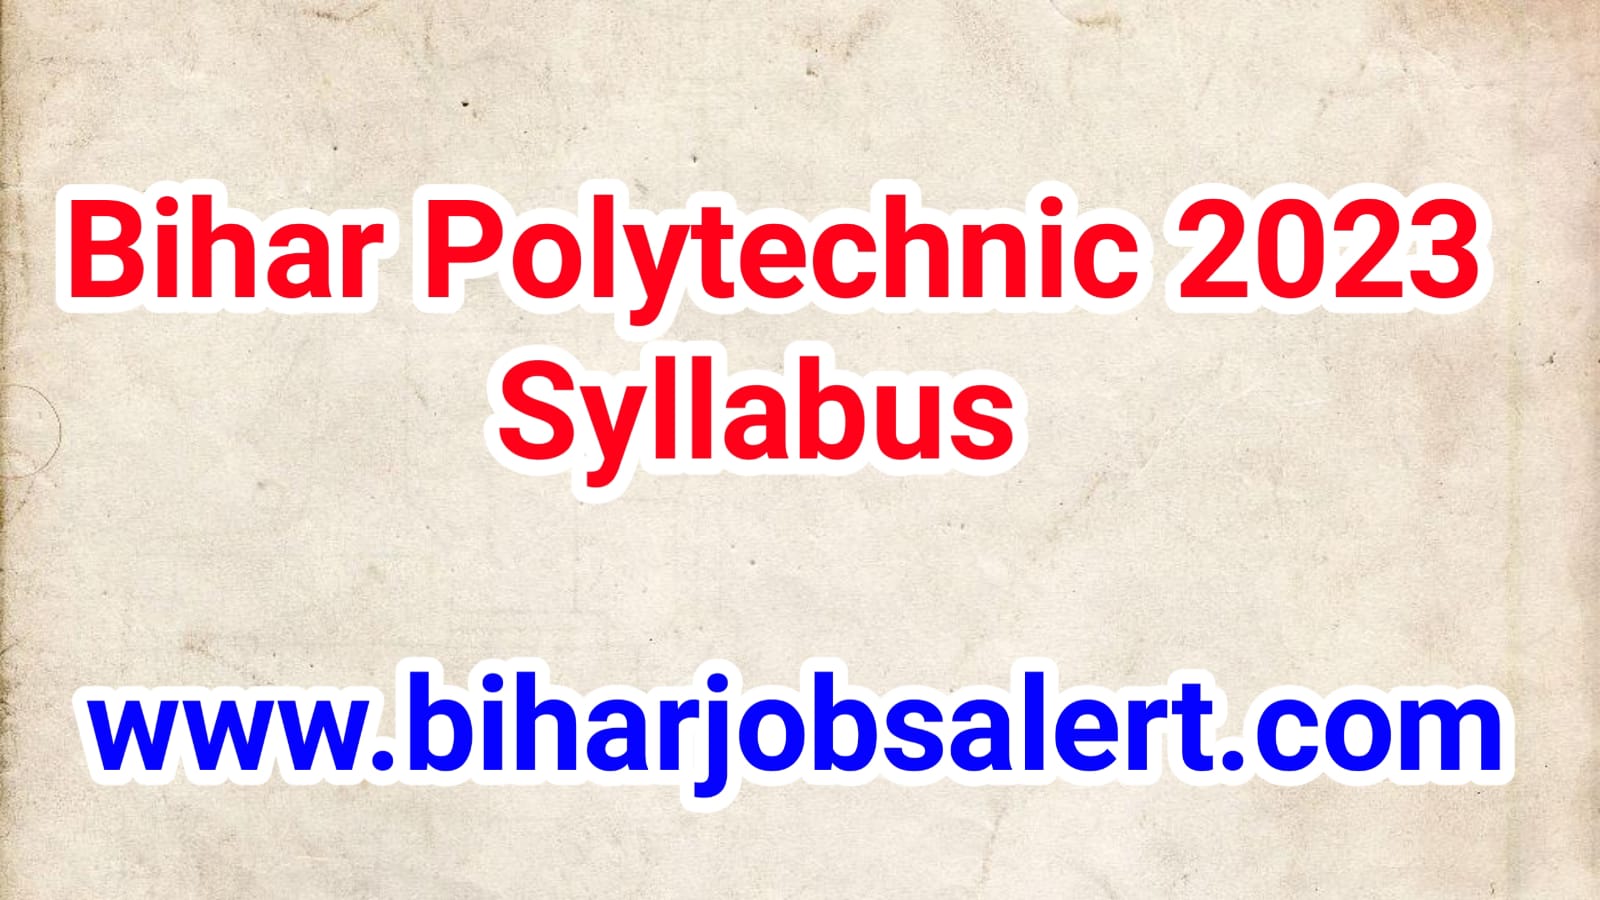 Bihar Polytechnic 2023 Syllabus